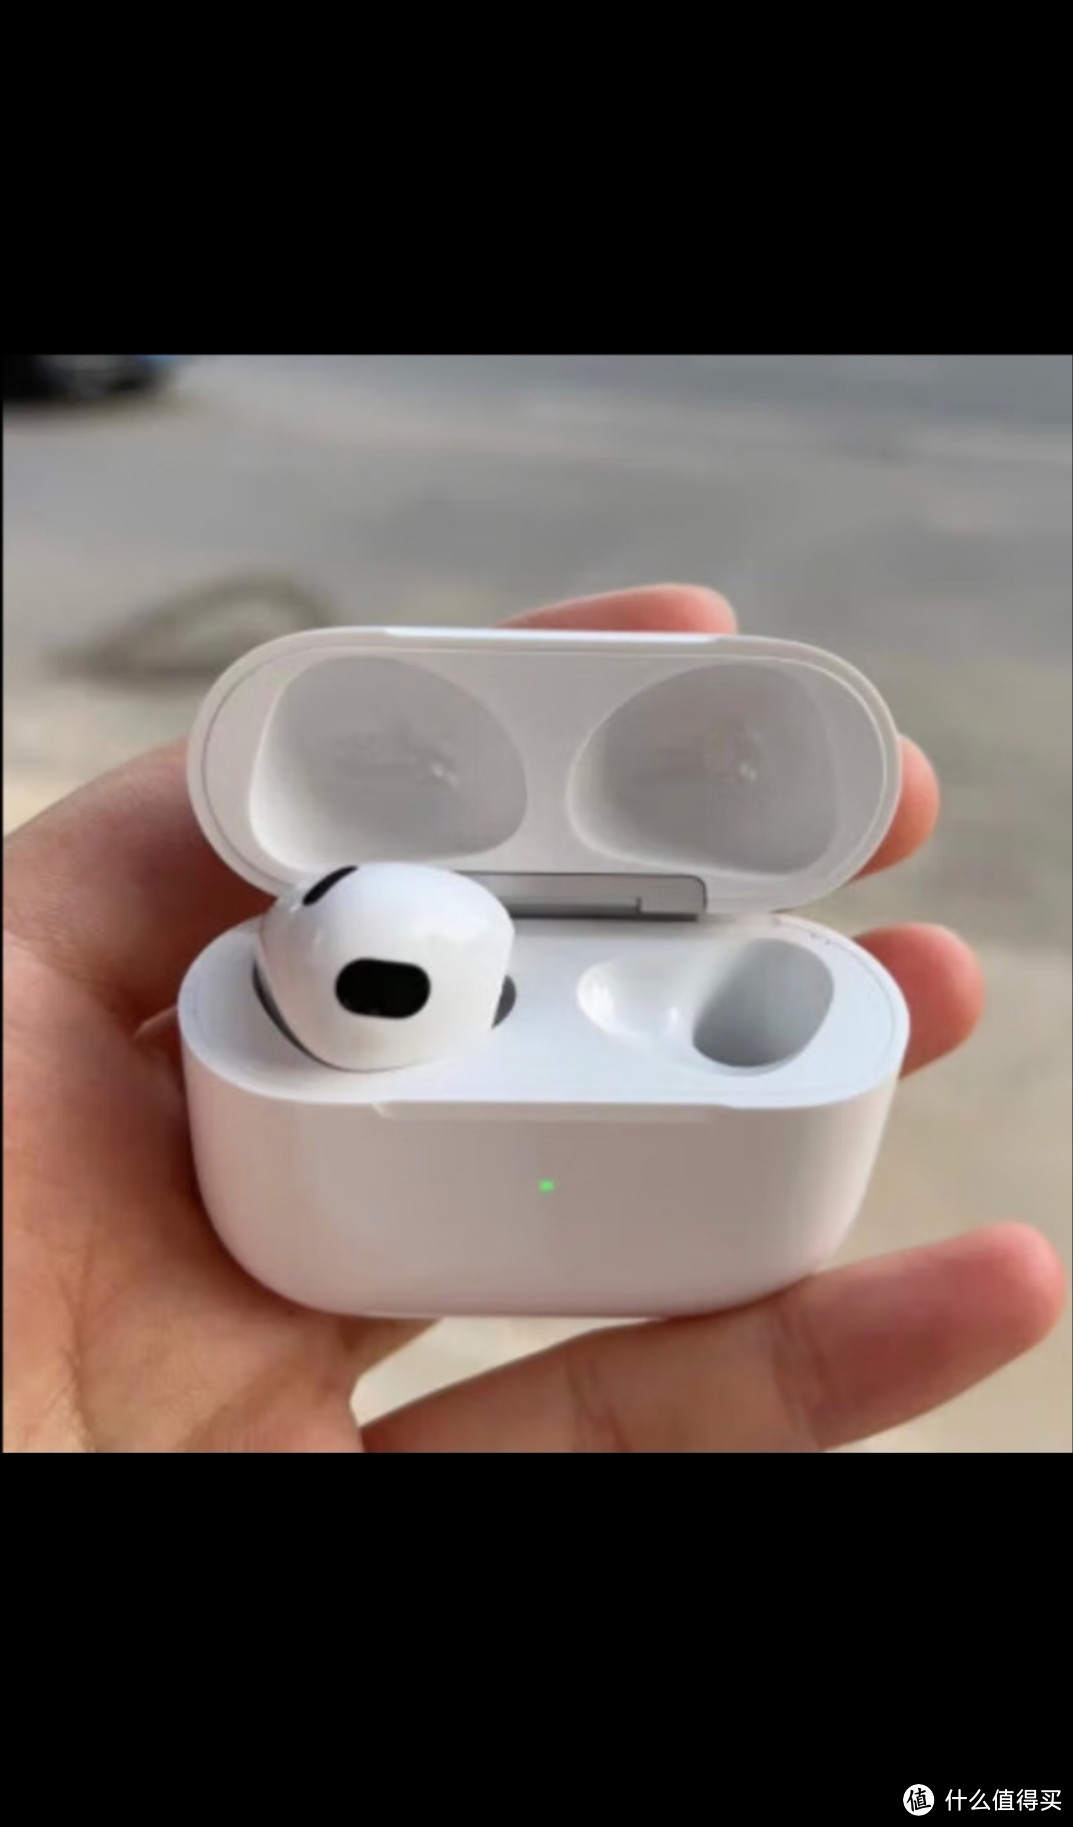 Apple AirPods (第三代) 配闪电充电盒 无线蓝牙耳机 Apple耳机 适用iPhone/iPad/Apple WatchApple AirP